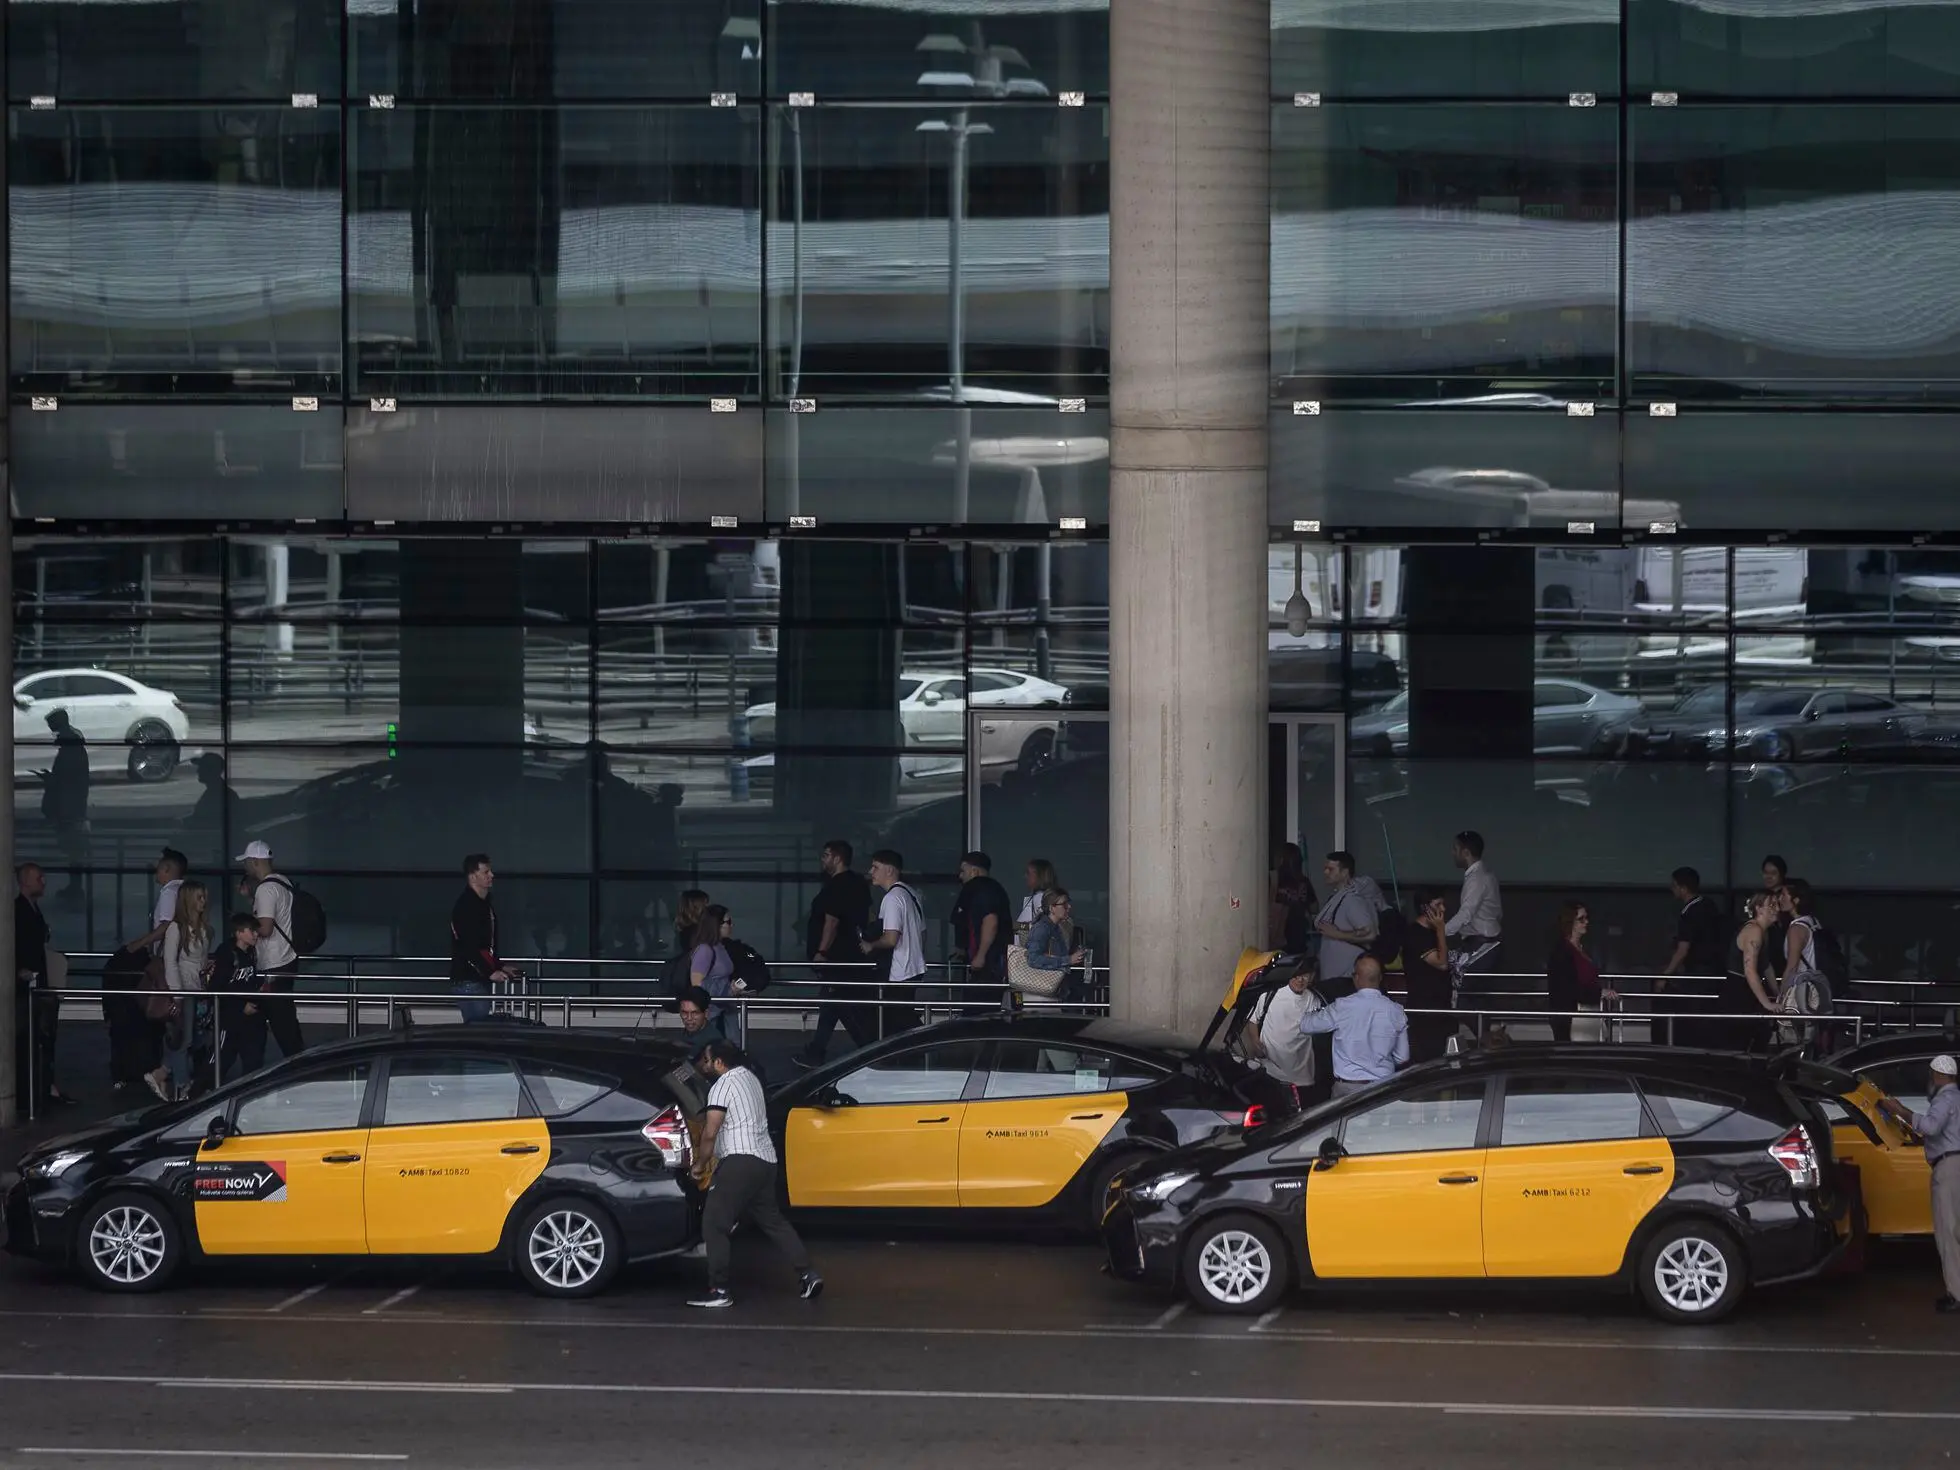 asociación profesional élite taxi barcelona - Cuántas licencias de taxi puede tener una persona en Barcelona